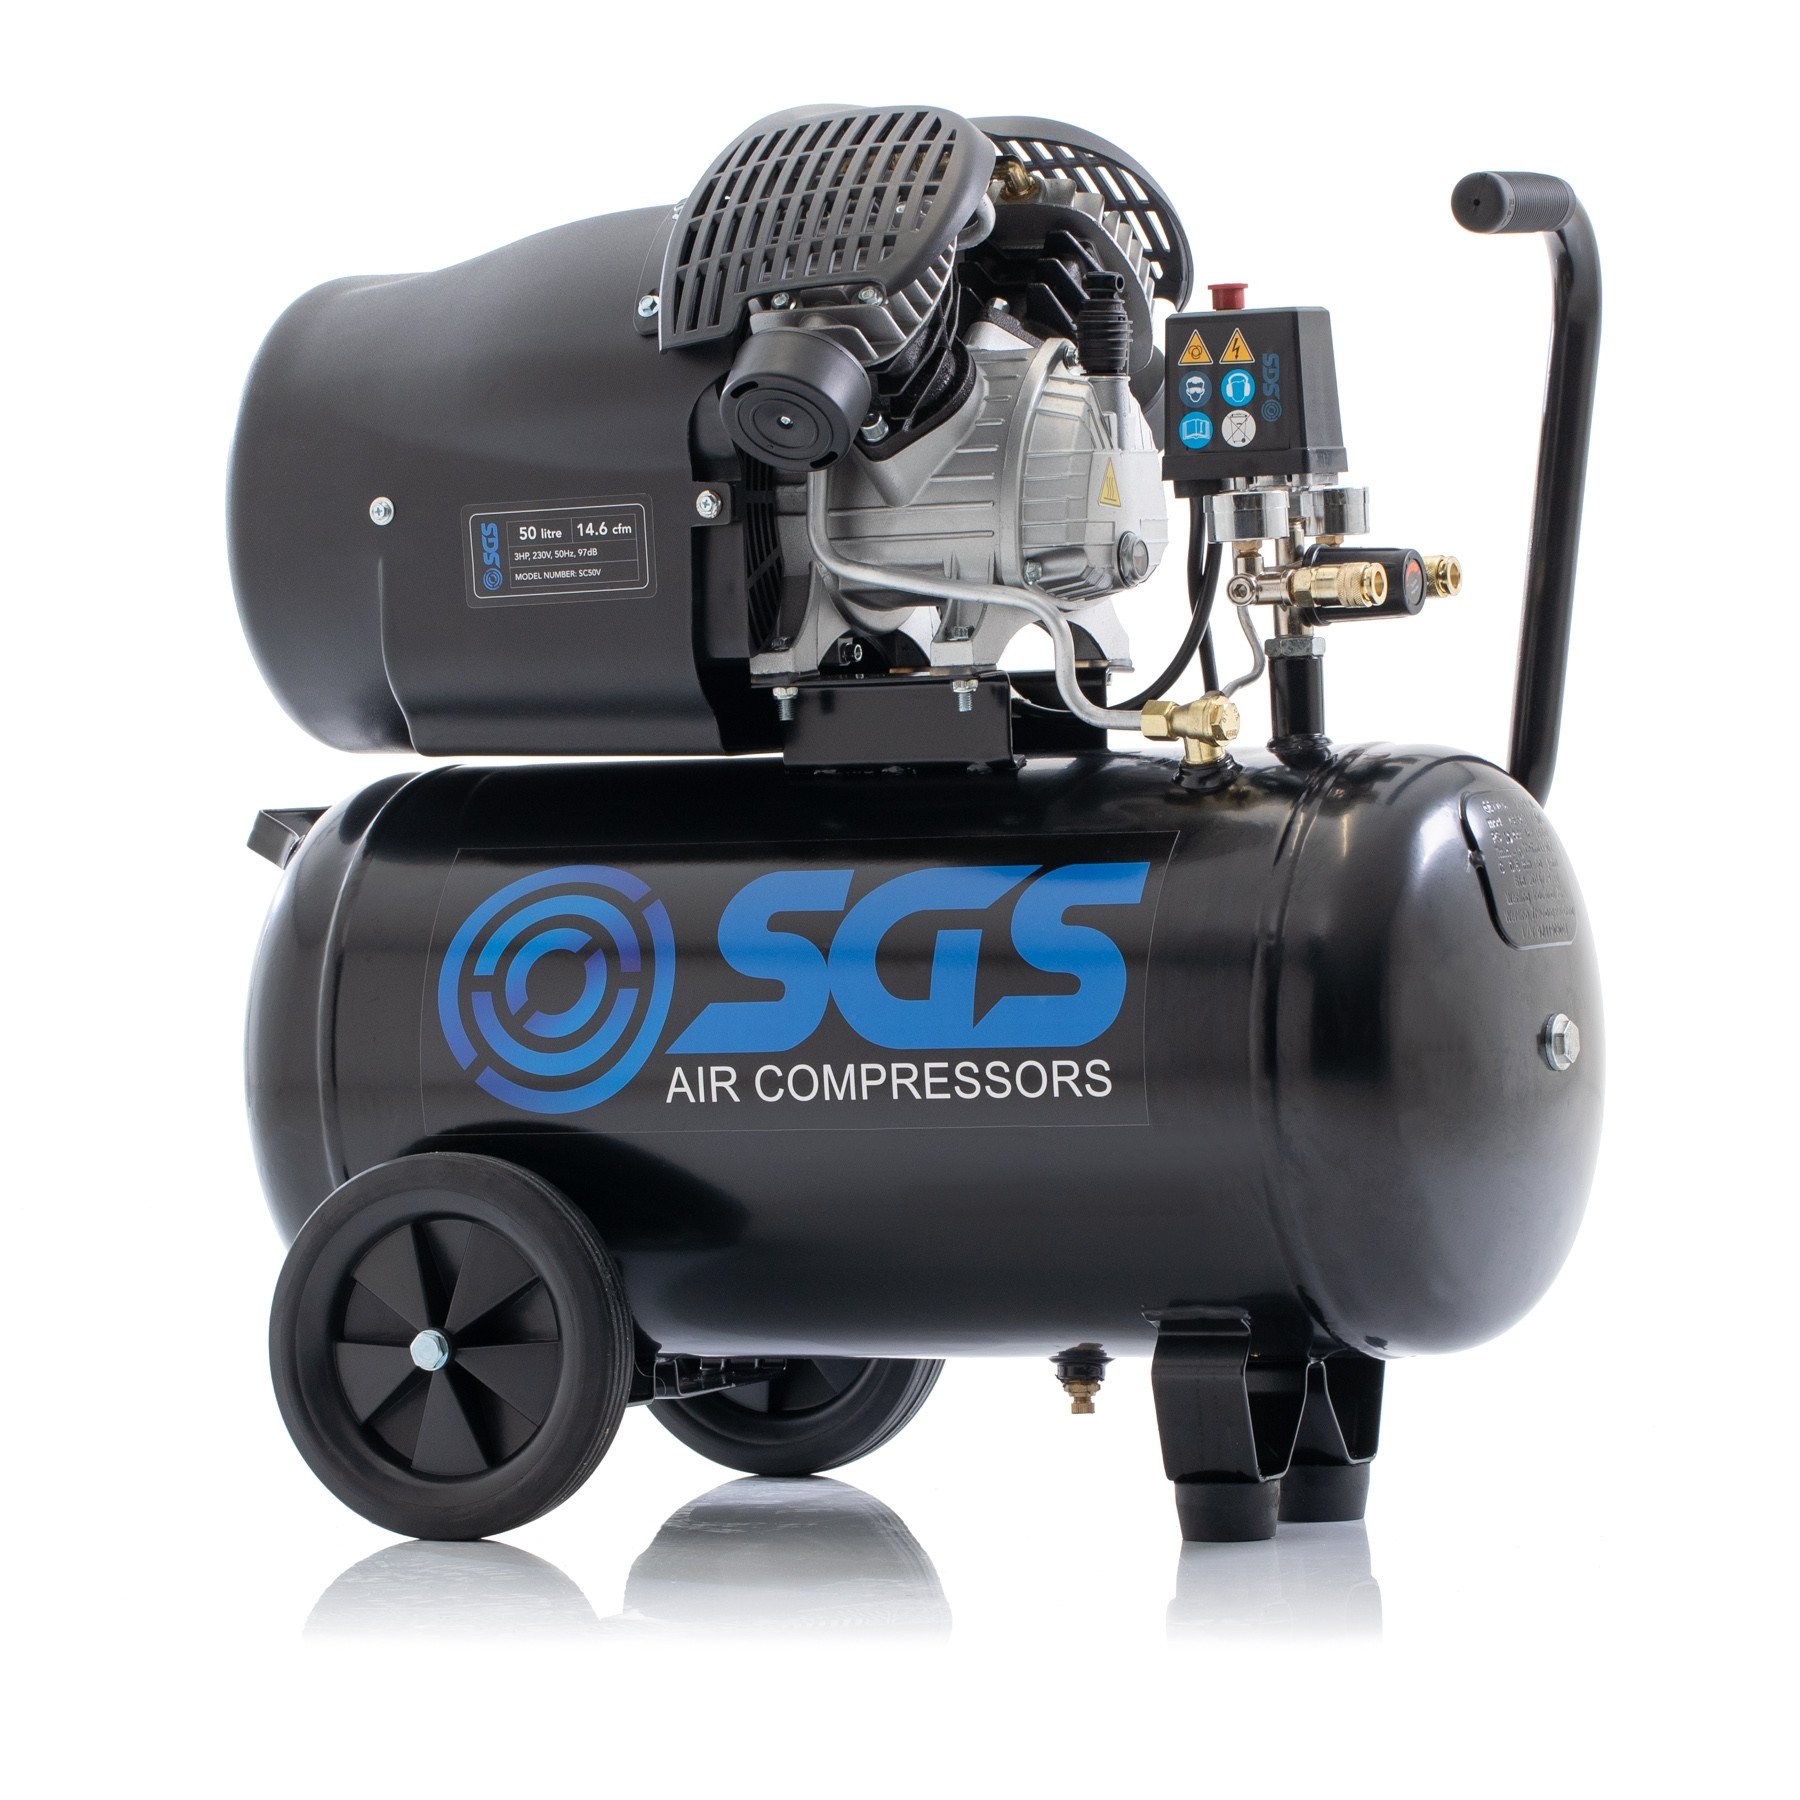 SGS 50升直驱V-Twin高功率空气压缩机- 14.6CFM 3.0HP 50L